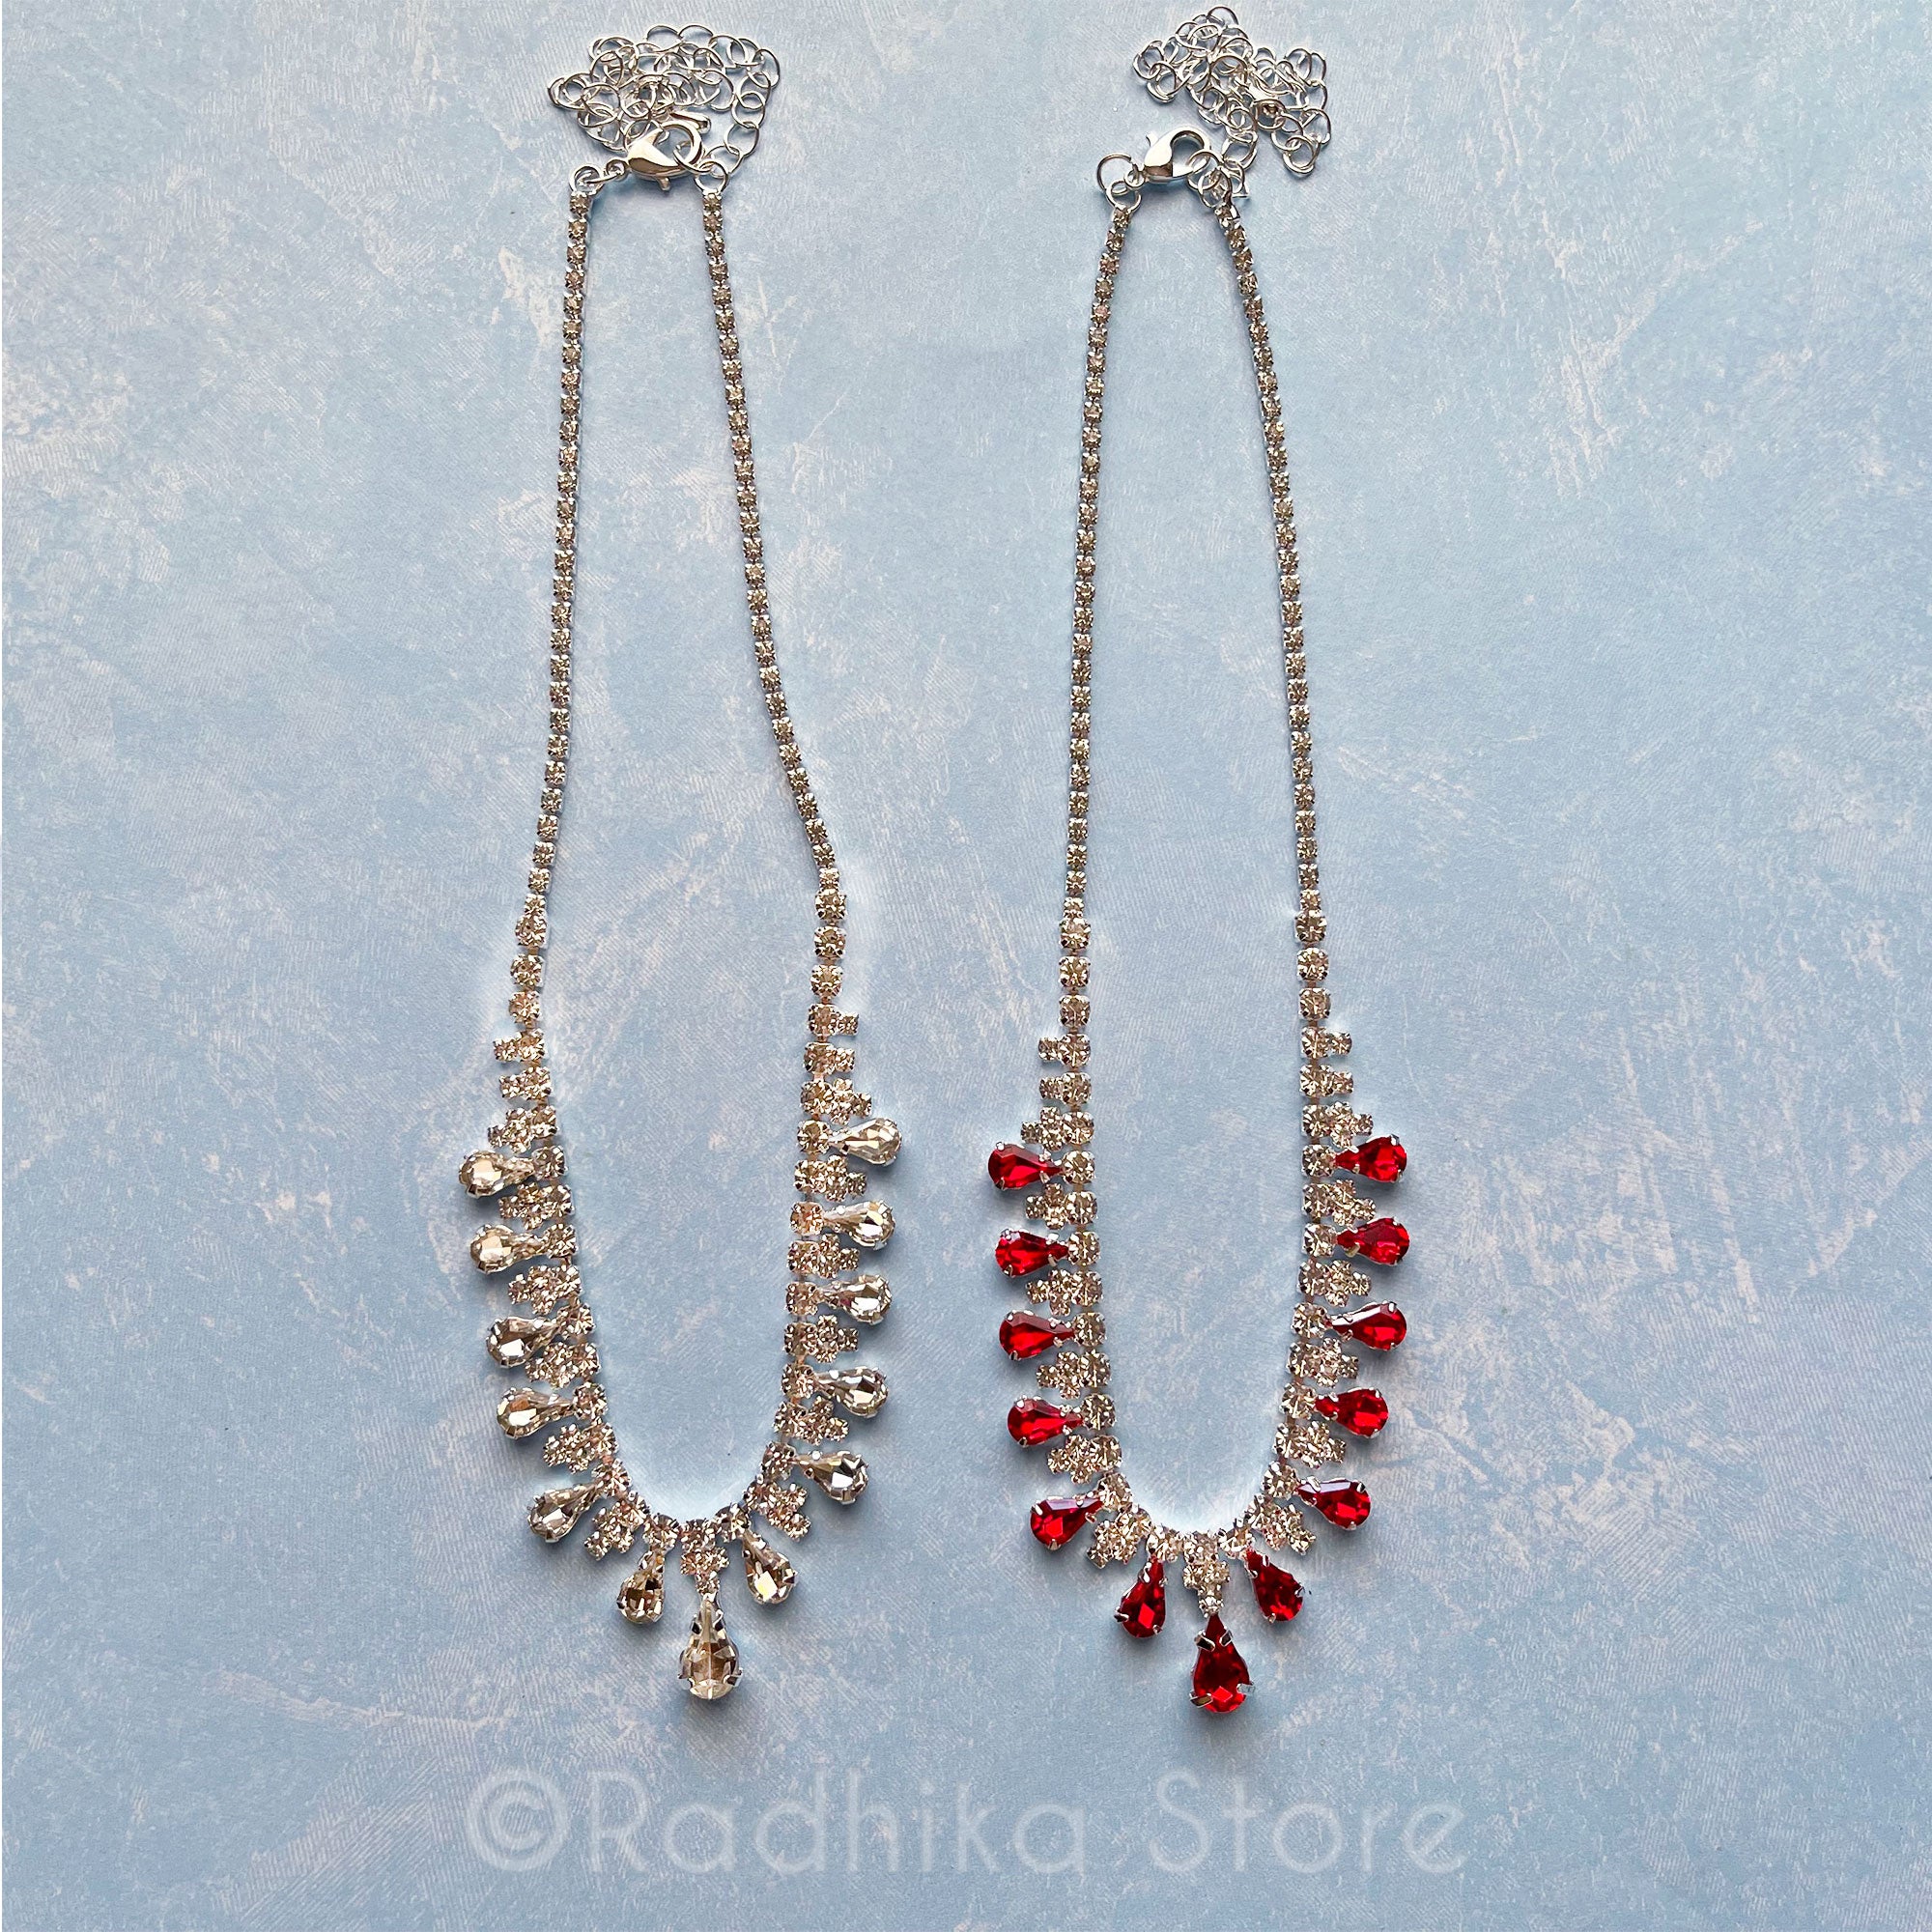 Teardrop Rhinestone - Deity Necklace and Earrings Set